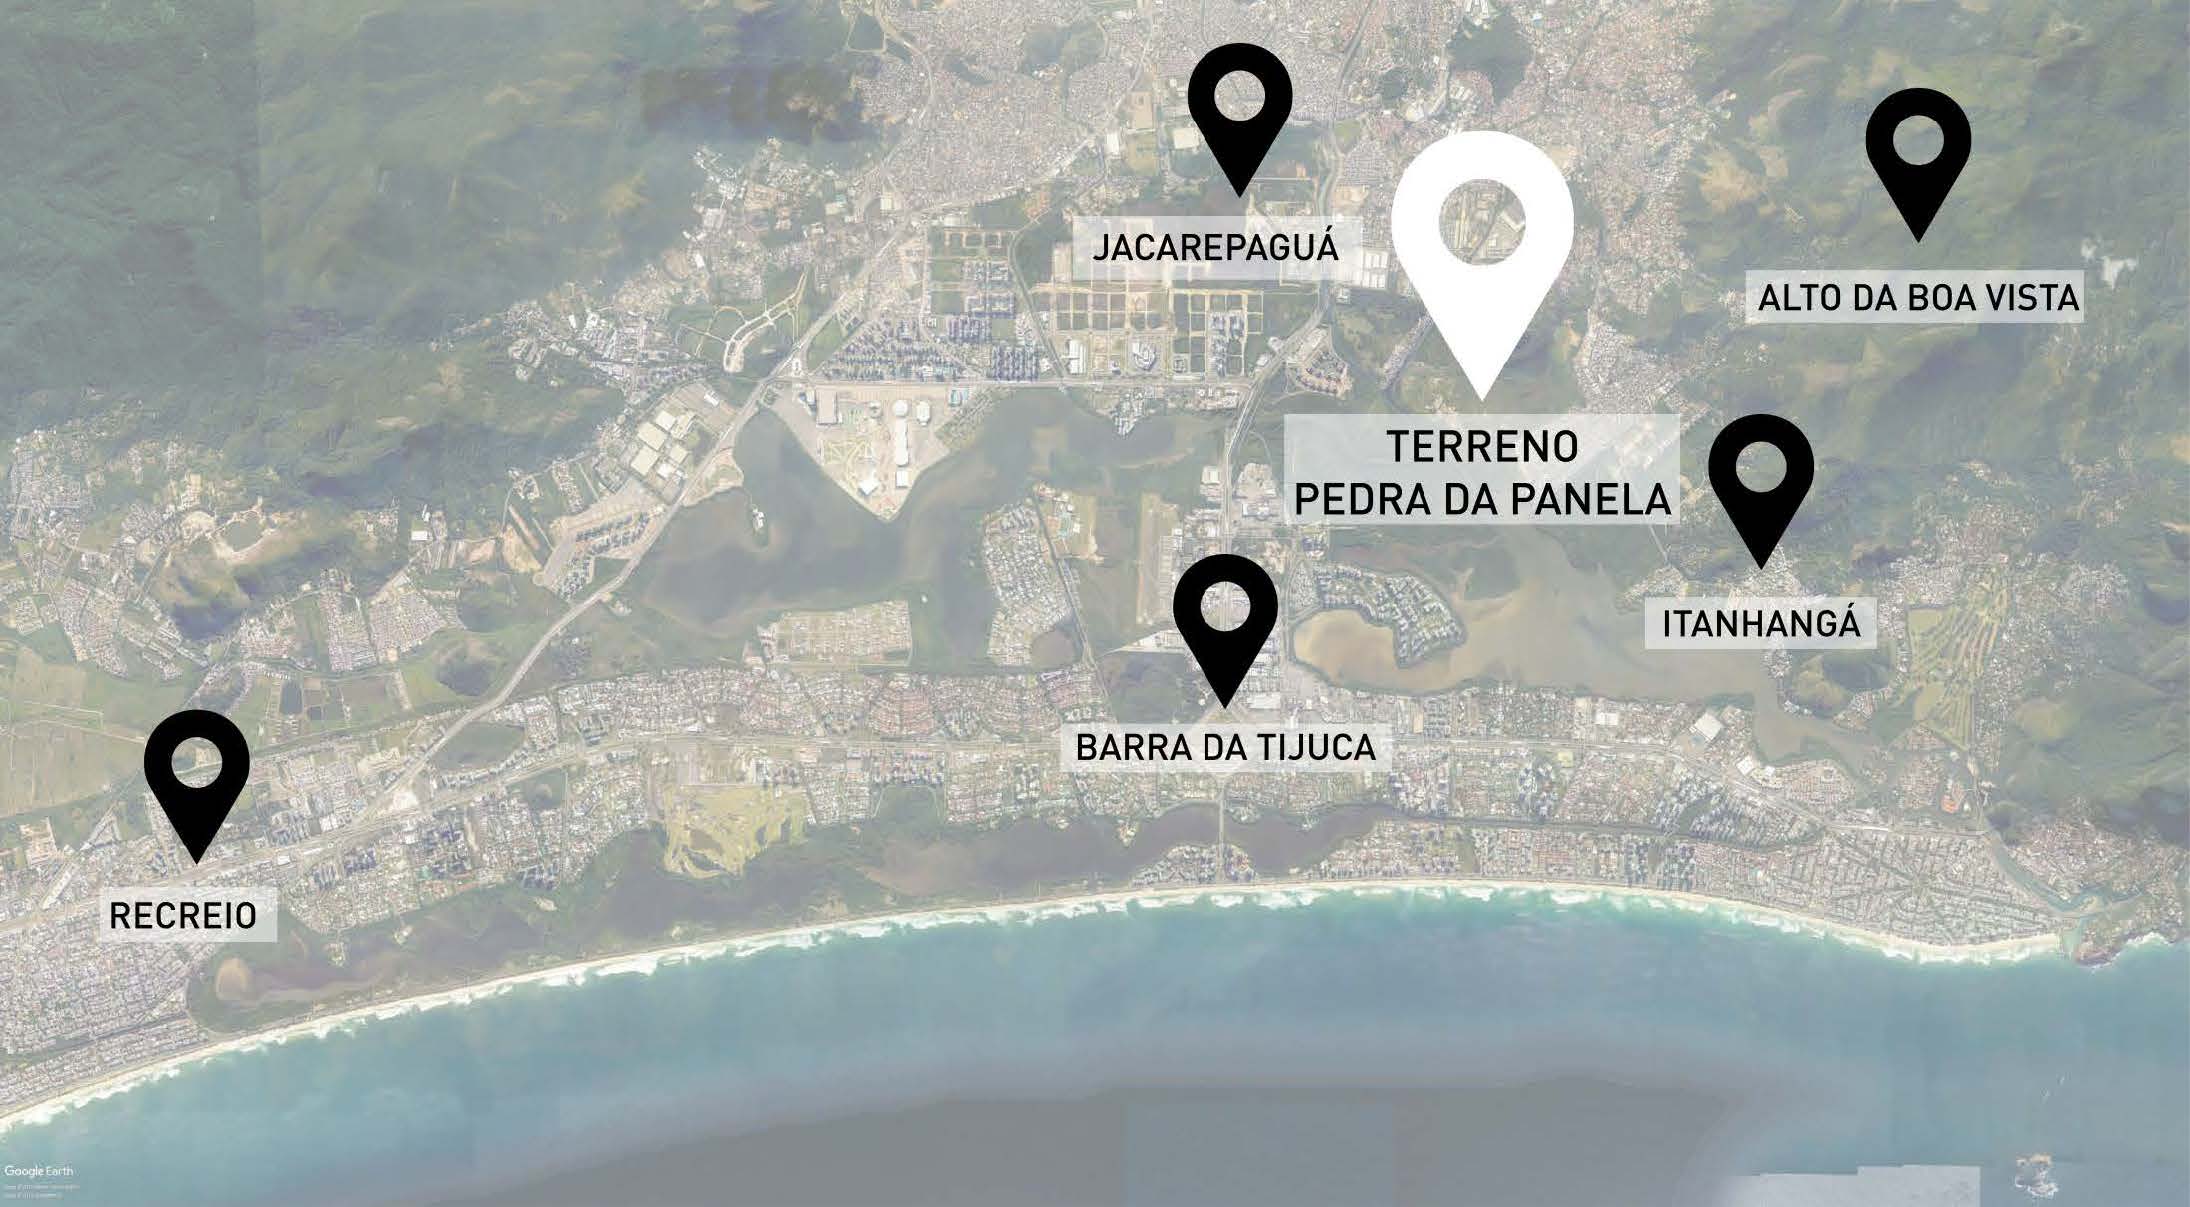 Região da Barra da Tijuca - o futuro da cidade passa por aqui - Página 5 Image_gallery?uuid=e55c8f83-16c4-4677-9633-c5faa99376d2&groupId=10452448&t=1571170319724